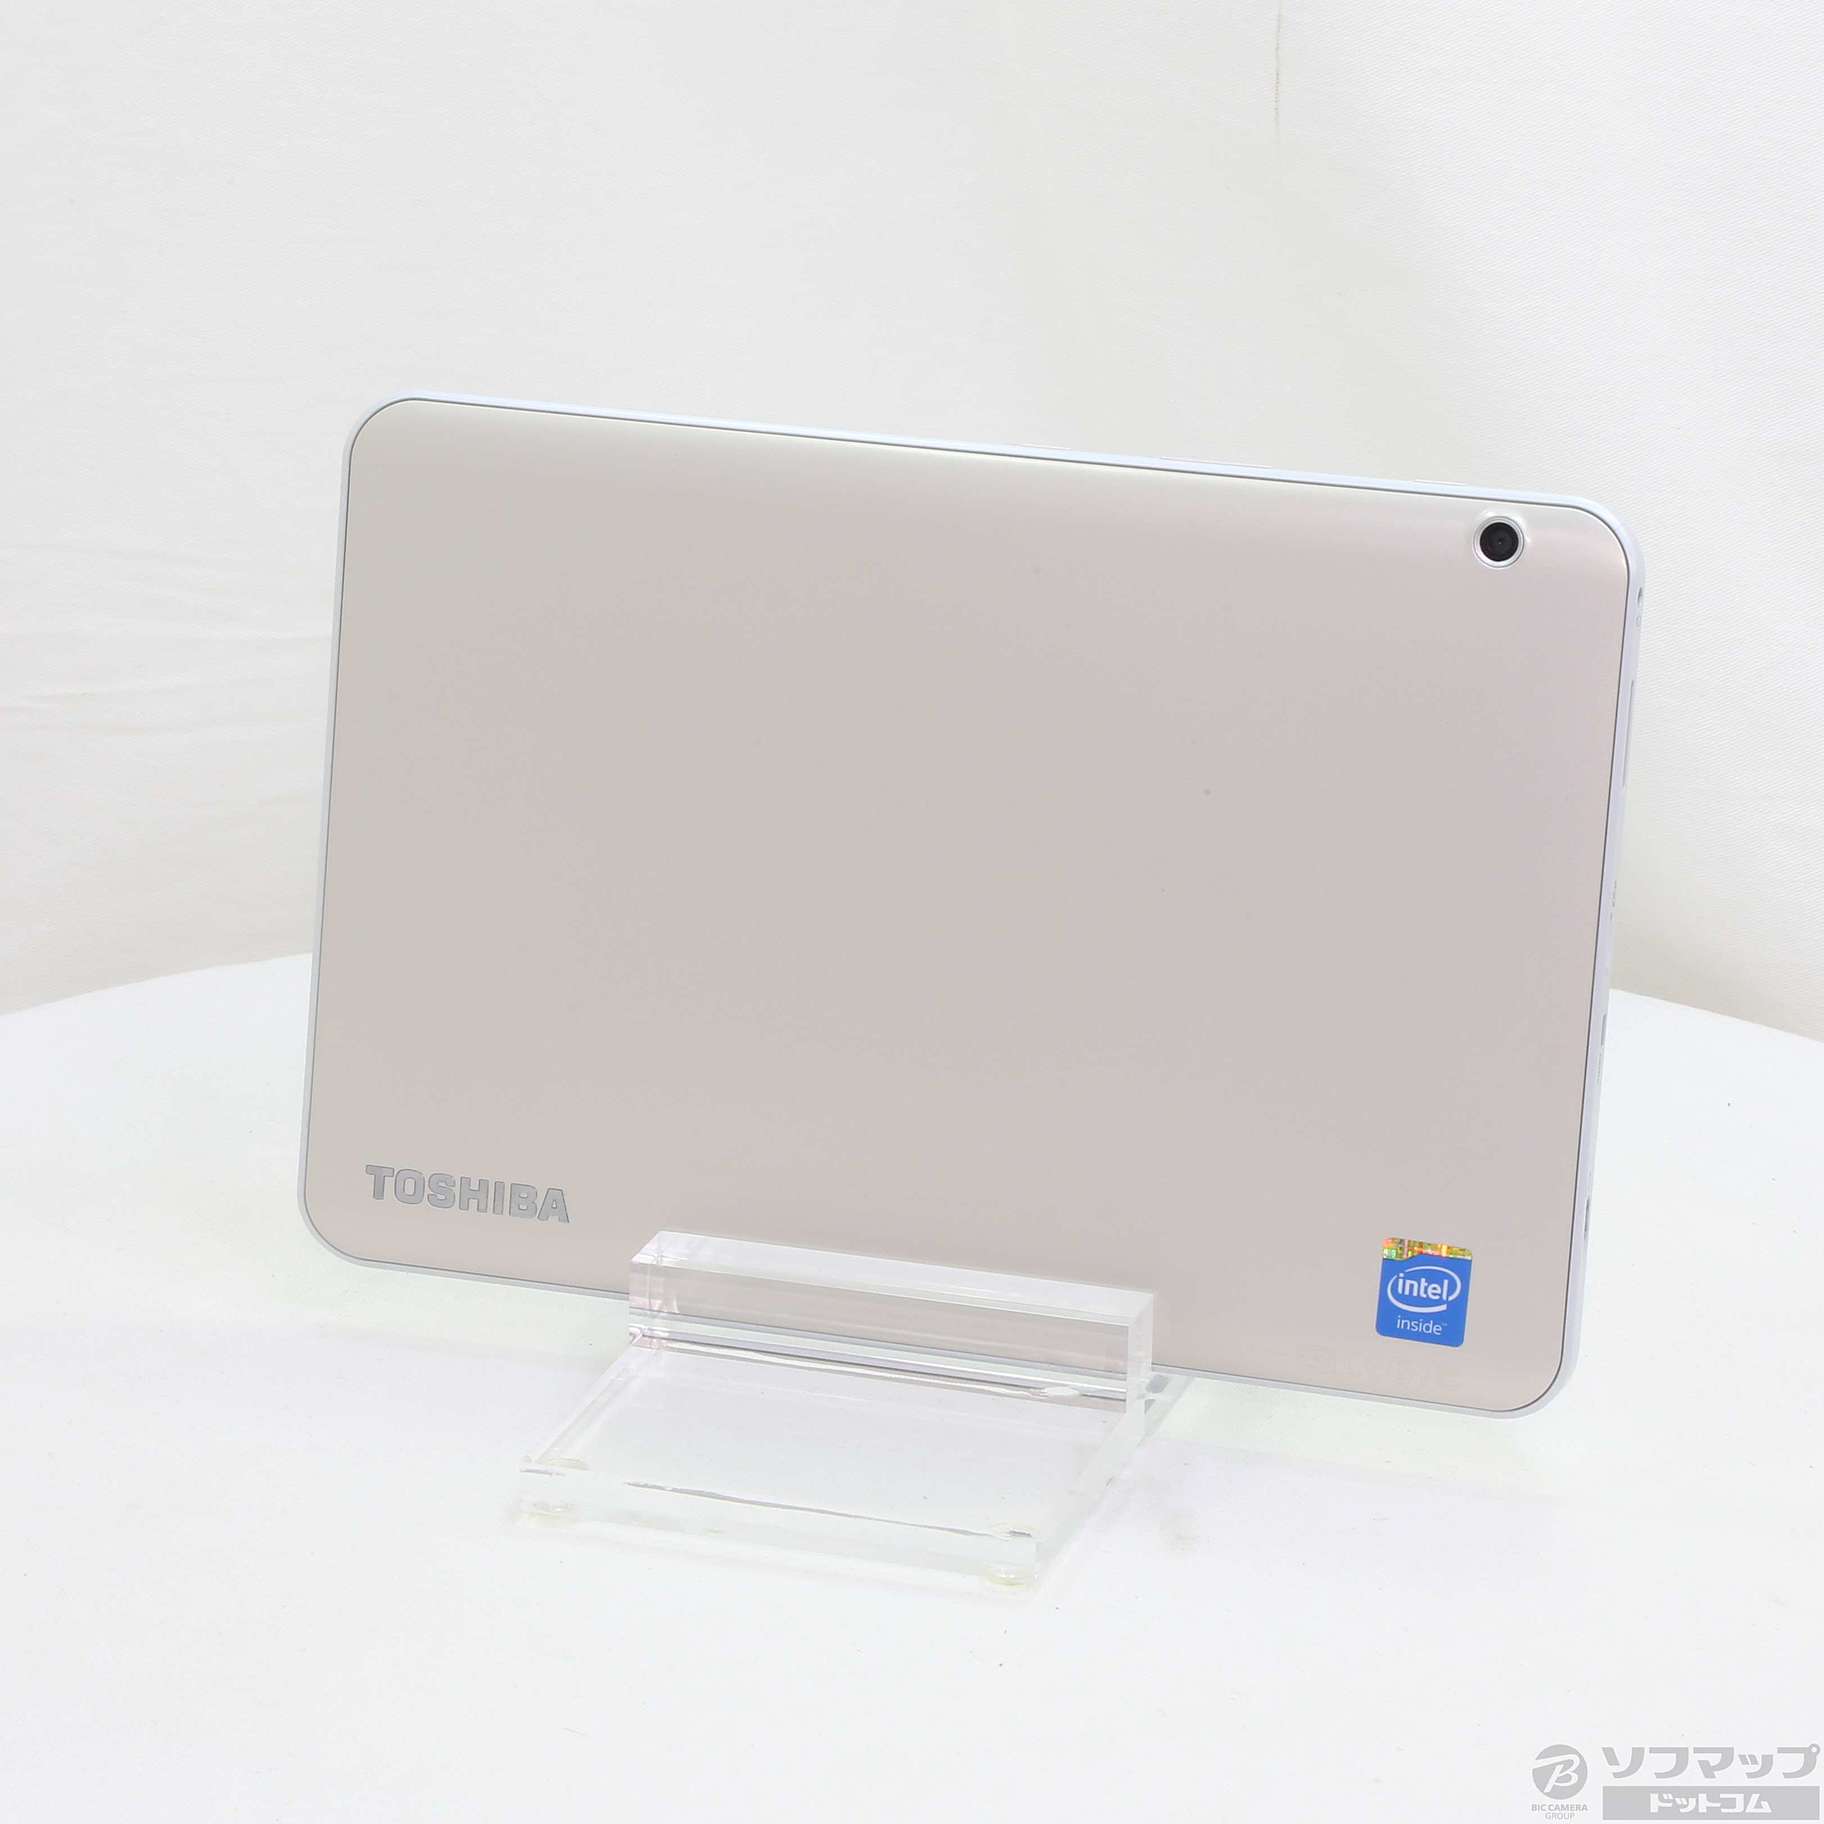 東芝 dynabook Tab S50 windows8.1 美品